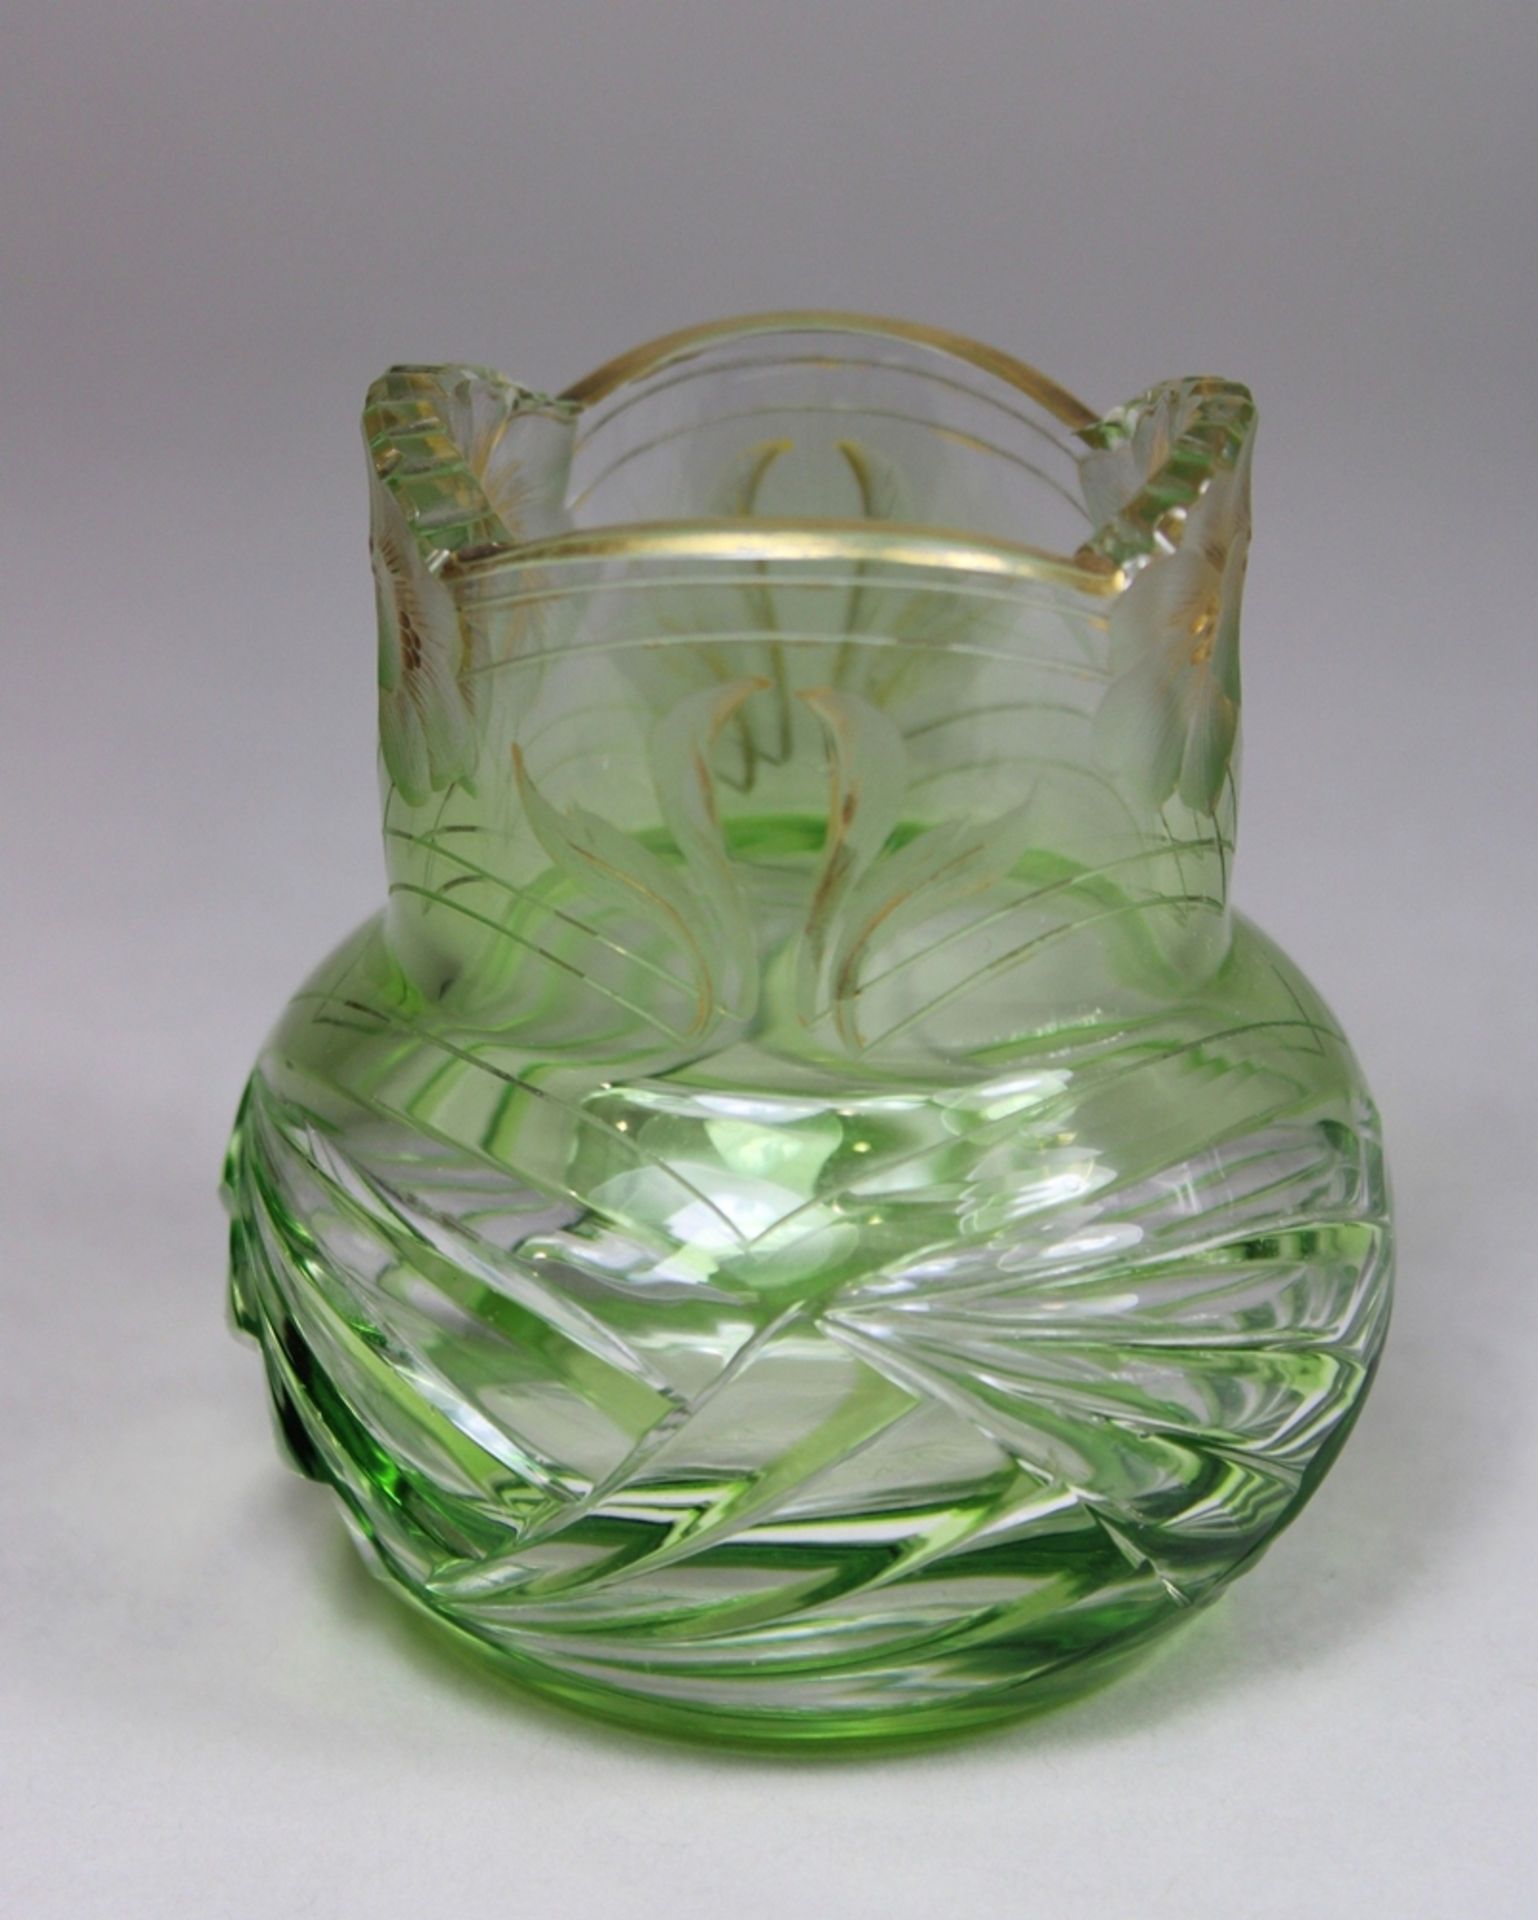 Emile Galle Vase, Glas, um 1900, am Boden bez. (E Galle), Gold- und Blumendekor, H.: 8 cm. Guter, a - Bild 2 aus 3